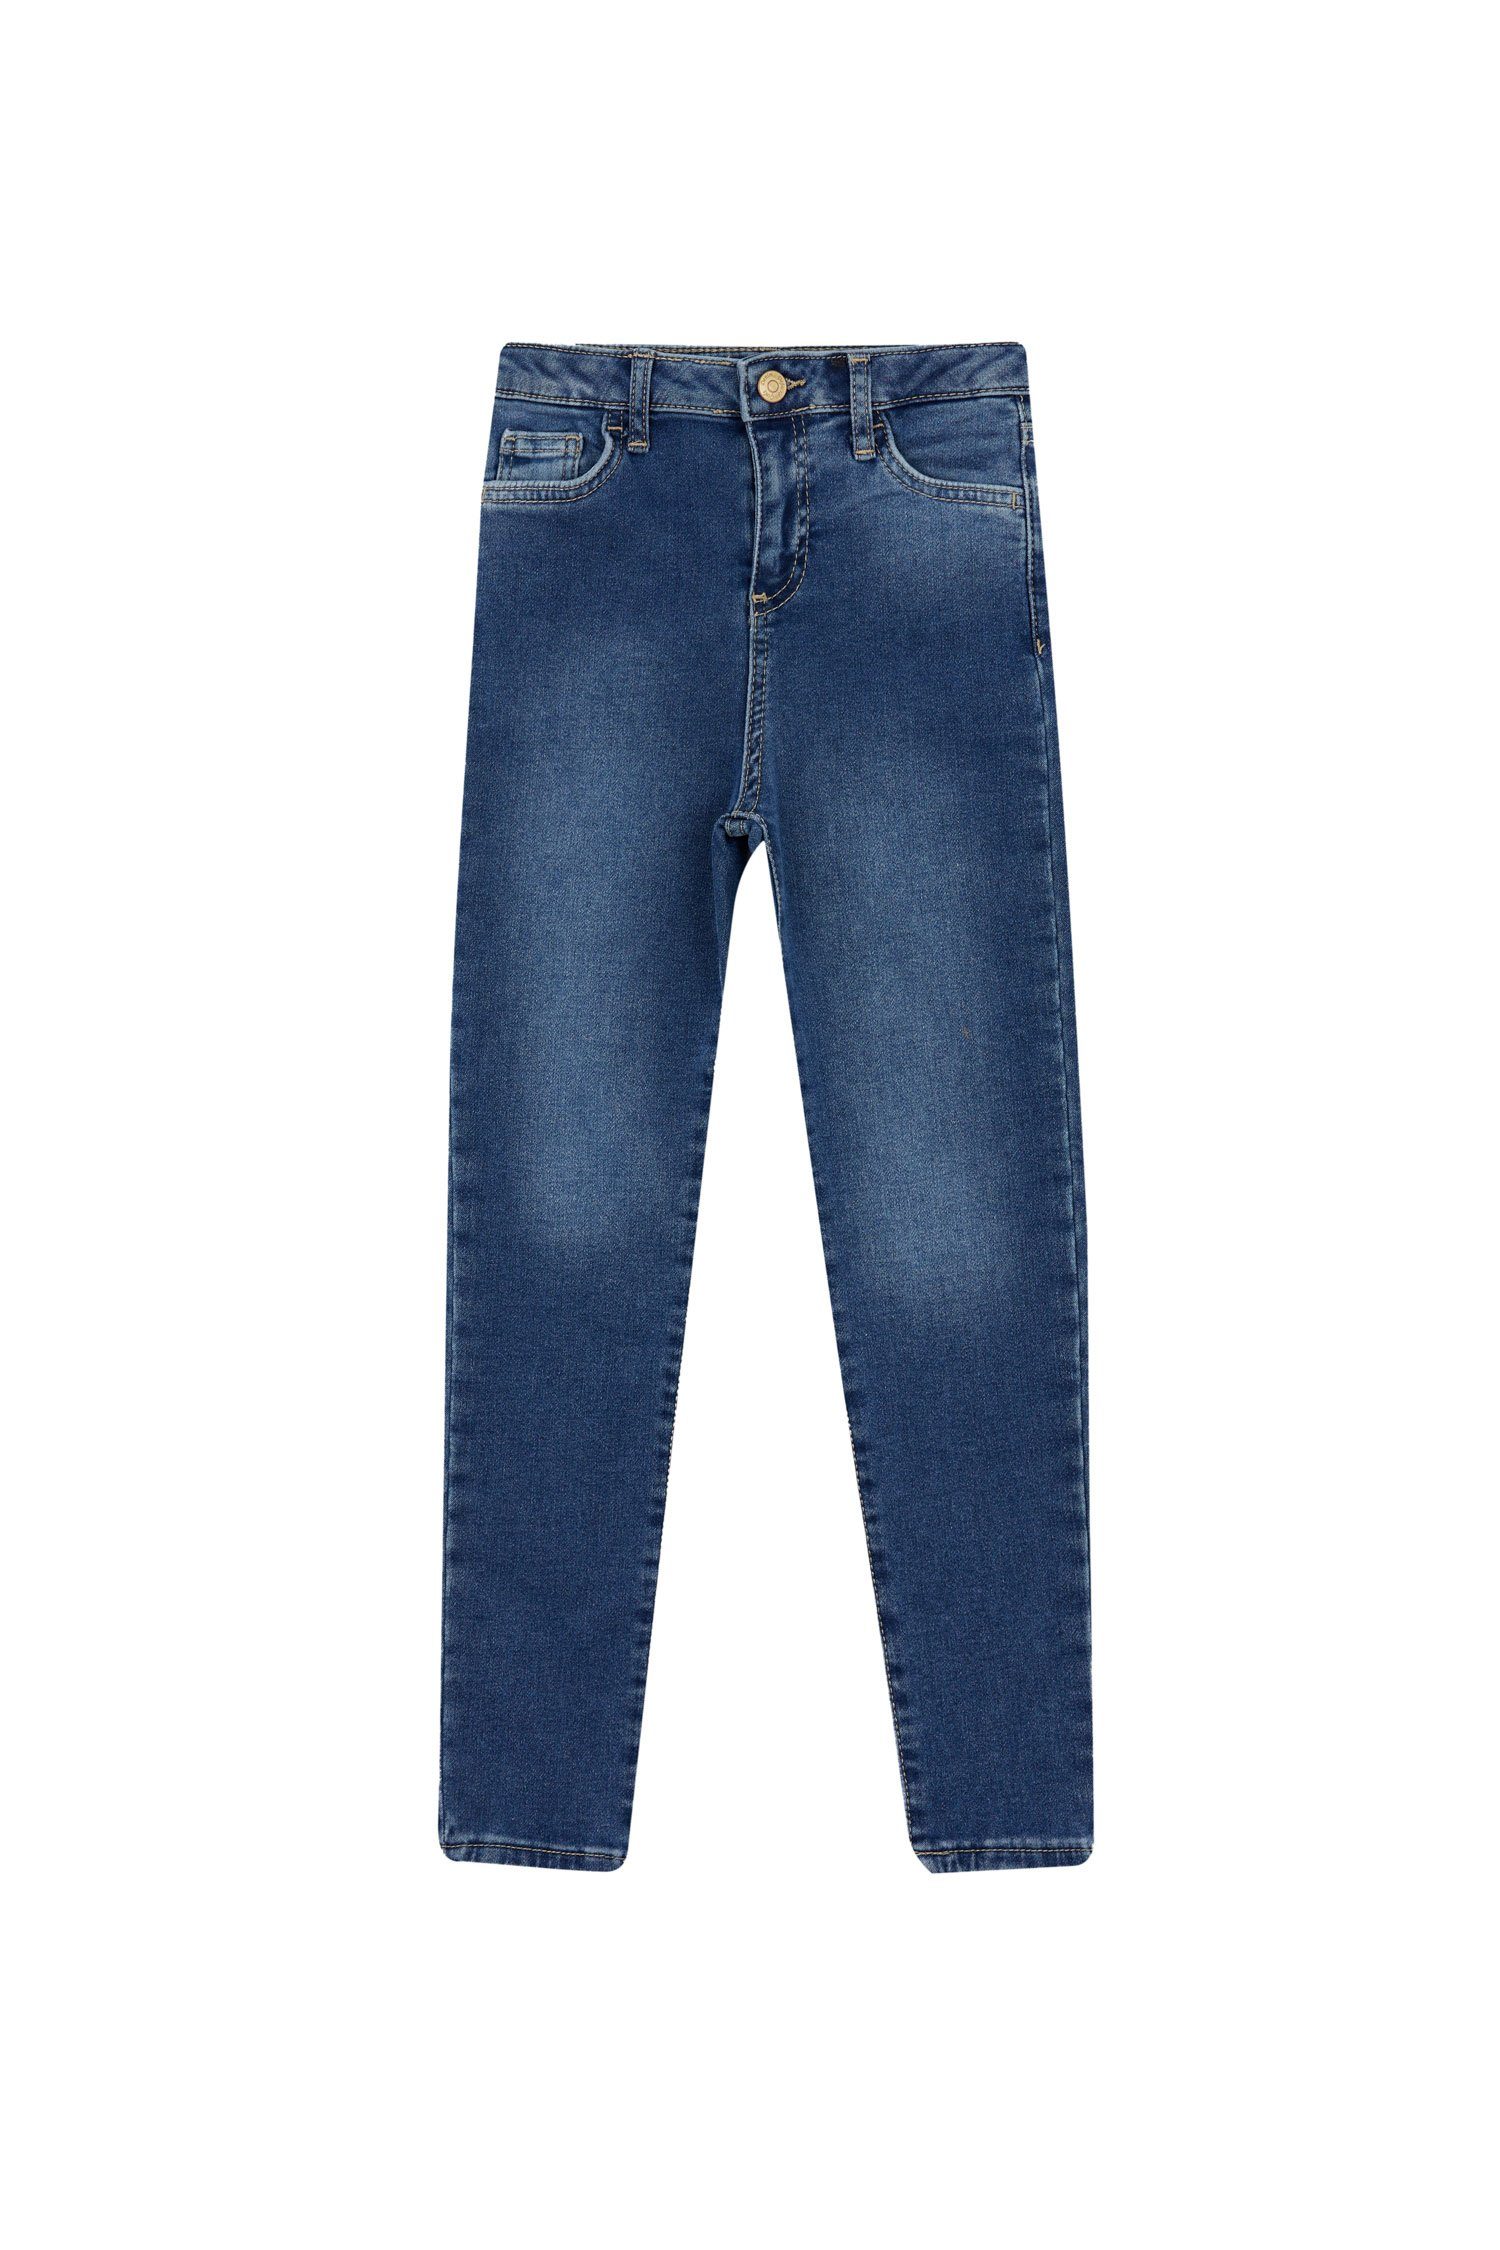 SKINNY DeFacto Mädchen FIT Skinny-fit-Jeans Regular-fit-Jeans